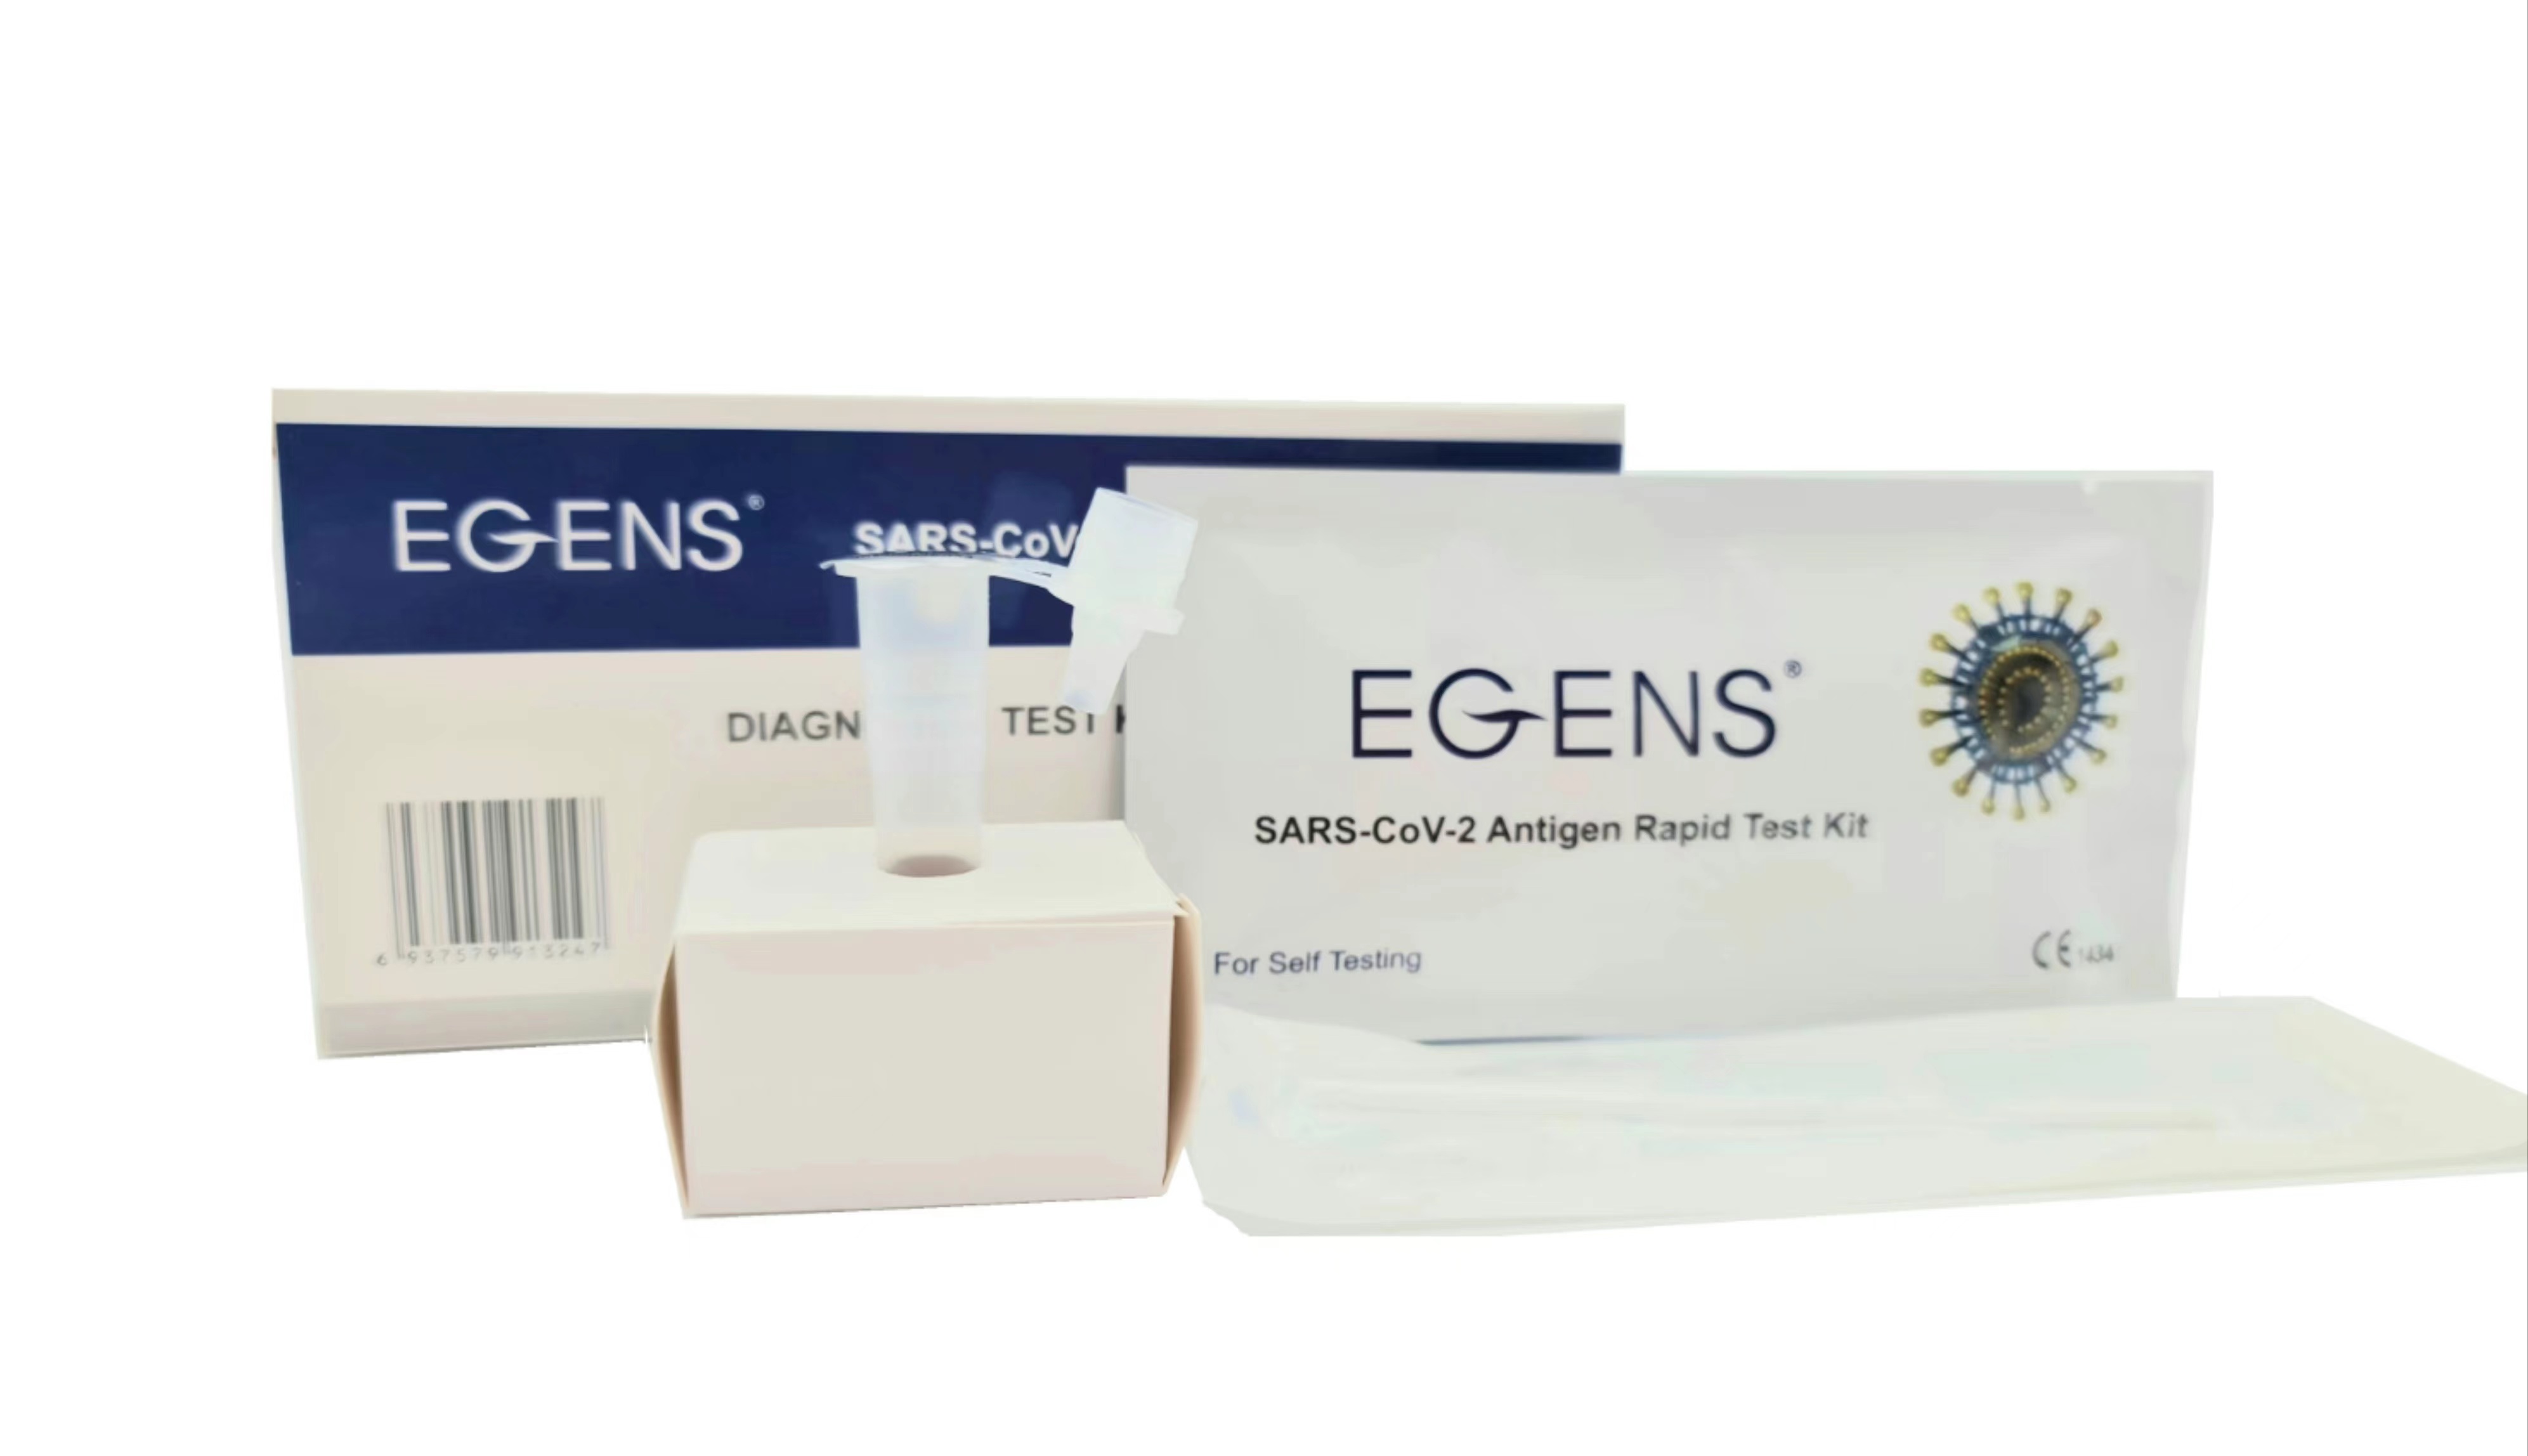      LAIEN Egens®  Antigen schnelltests NASAL mit CE1434,1 Karton 500 Tests(Einzelverpackung) mit 5 Sprache 